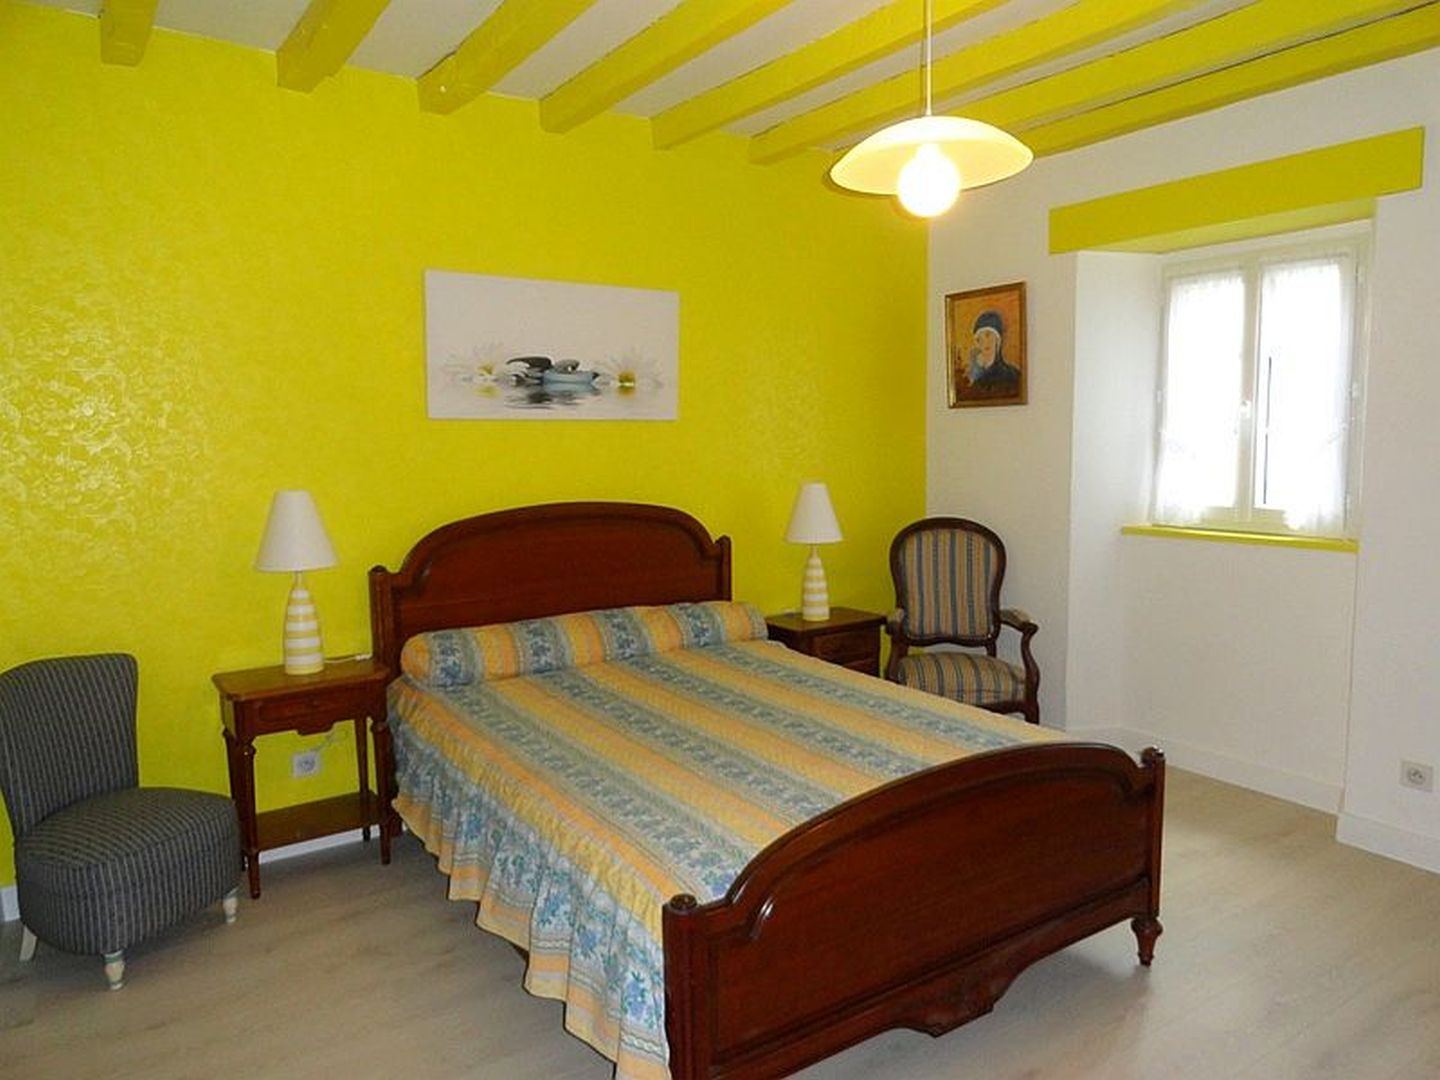 Location Loubet - Maison 10 pers - 13 - Chambre lit double jaune - Mendive 